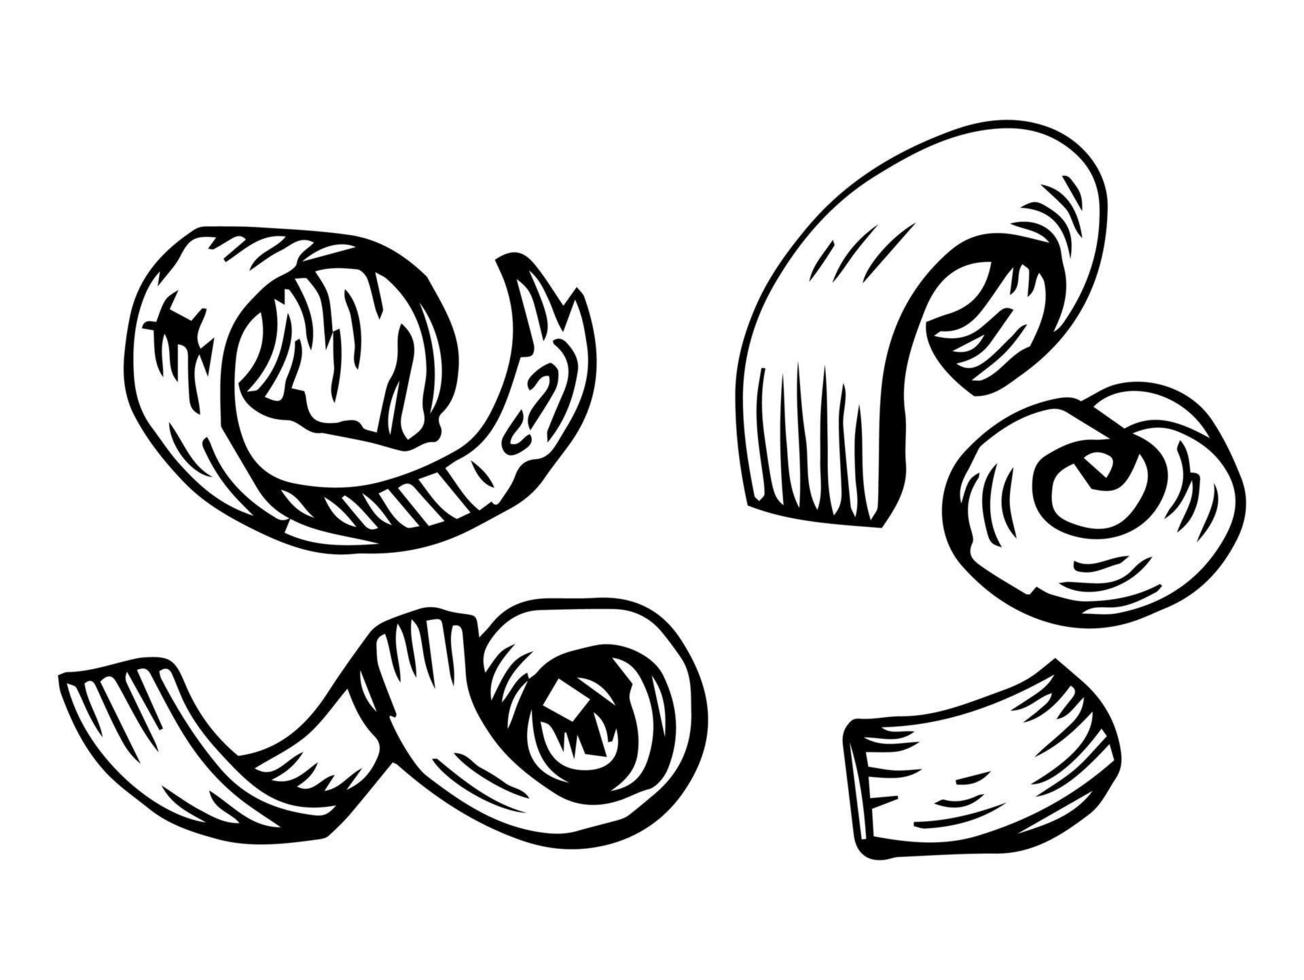 houten krullen of chips. gekruld hout Pel van snijwerk en timmerwerk werk, dichtbij omhoog, gedetailleerd tekening. timmerhout industrie themed geïsoleerd hand- getrokken schetsen illustratie Aan wit achtergrond. vector